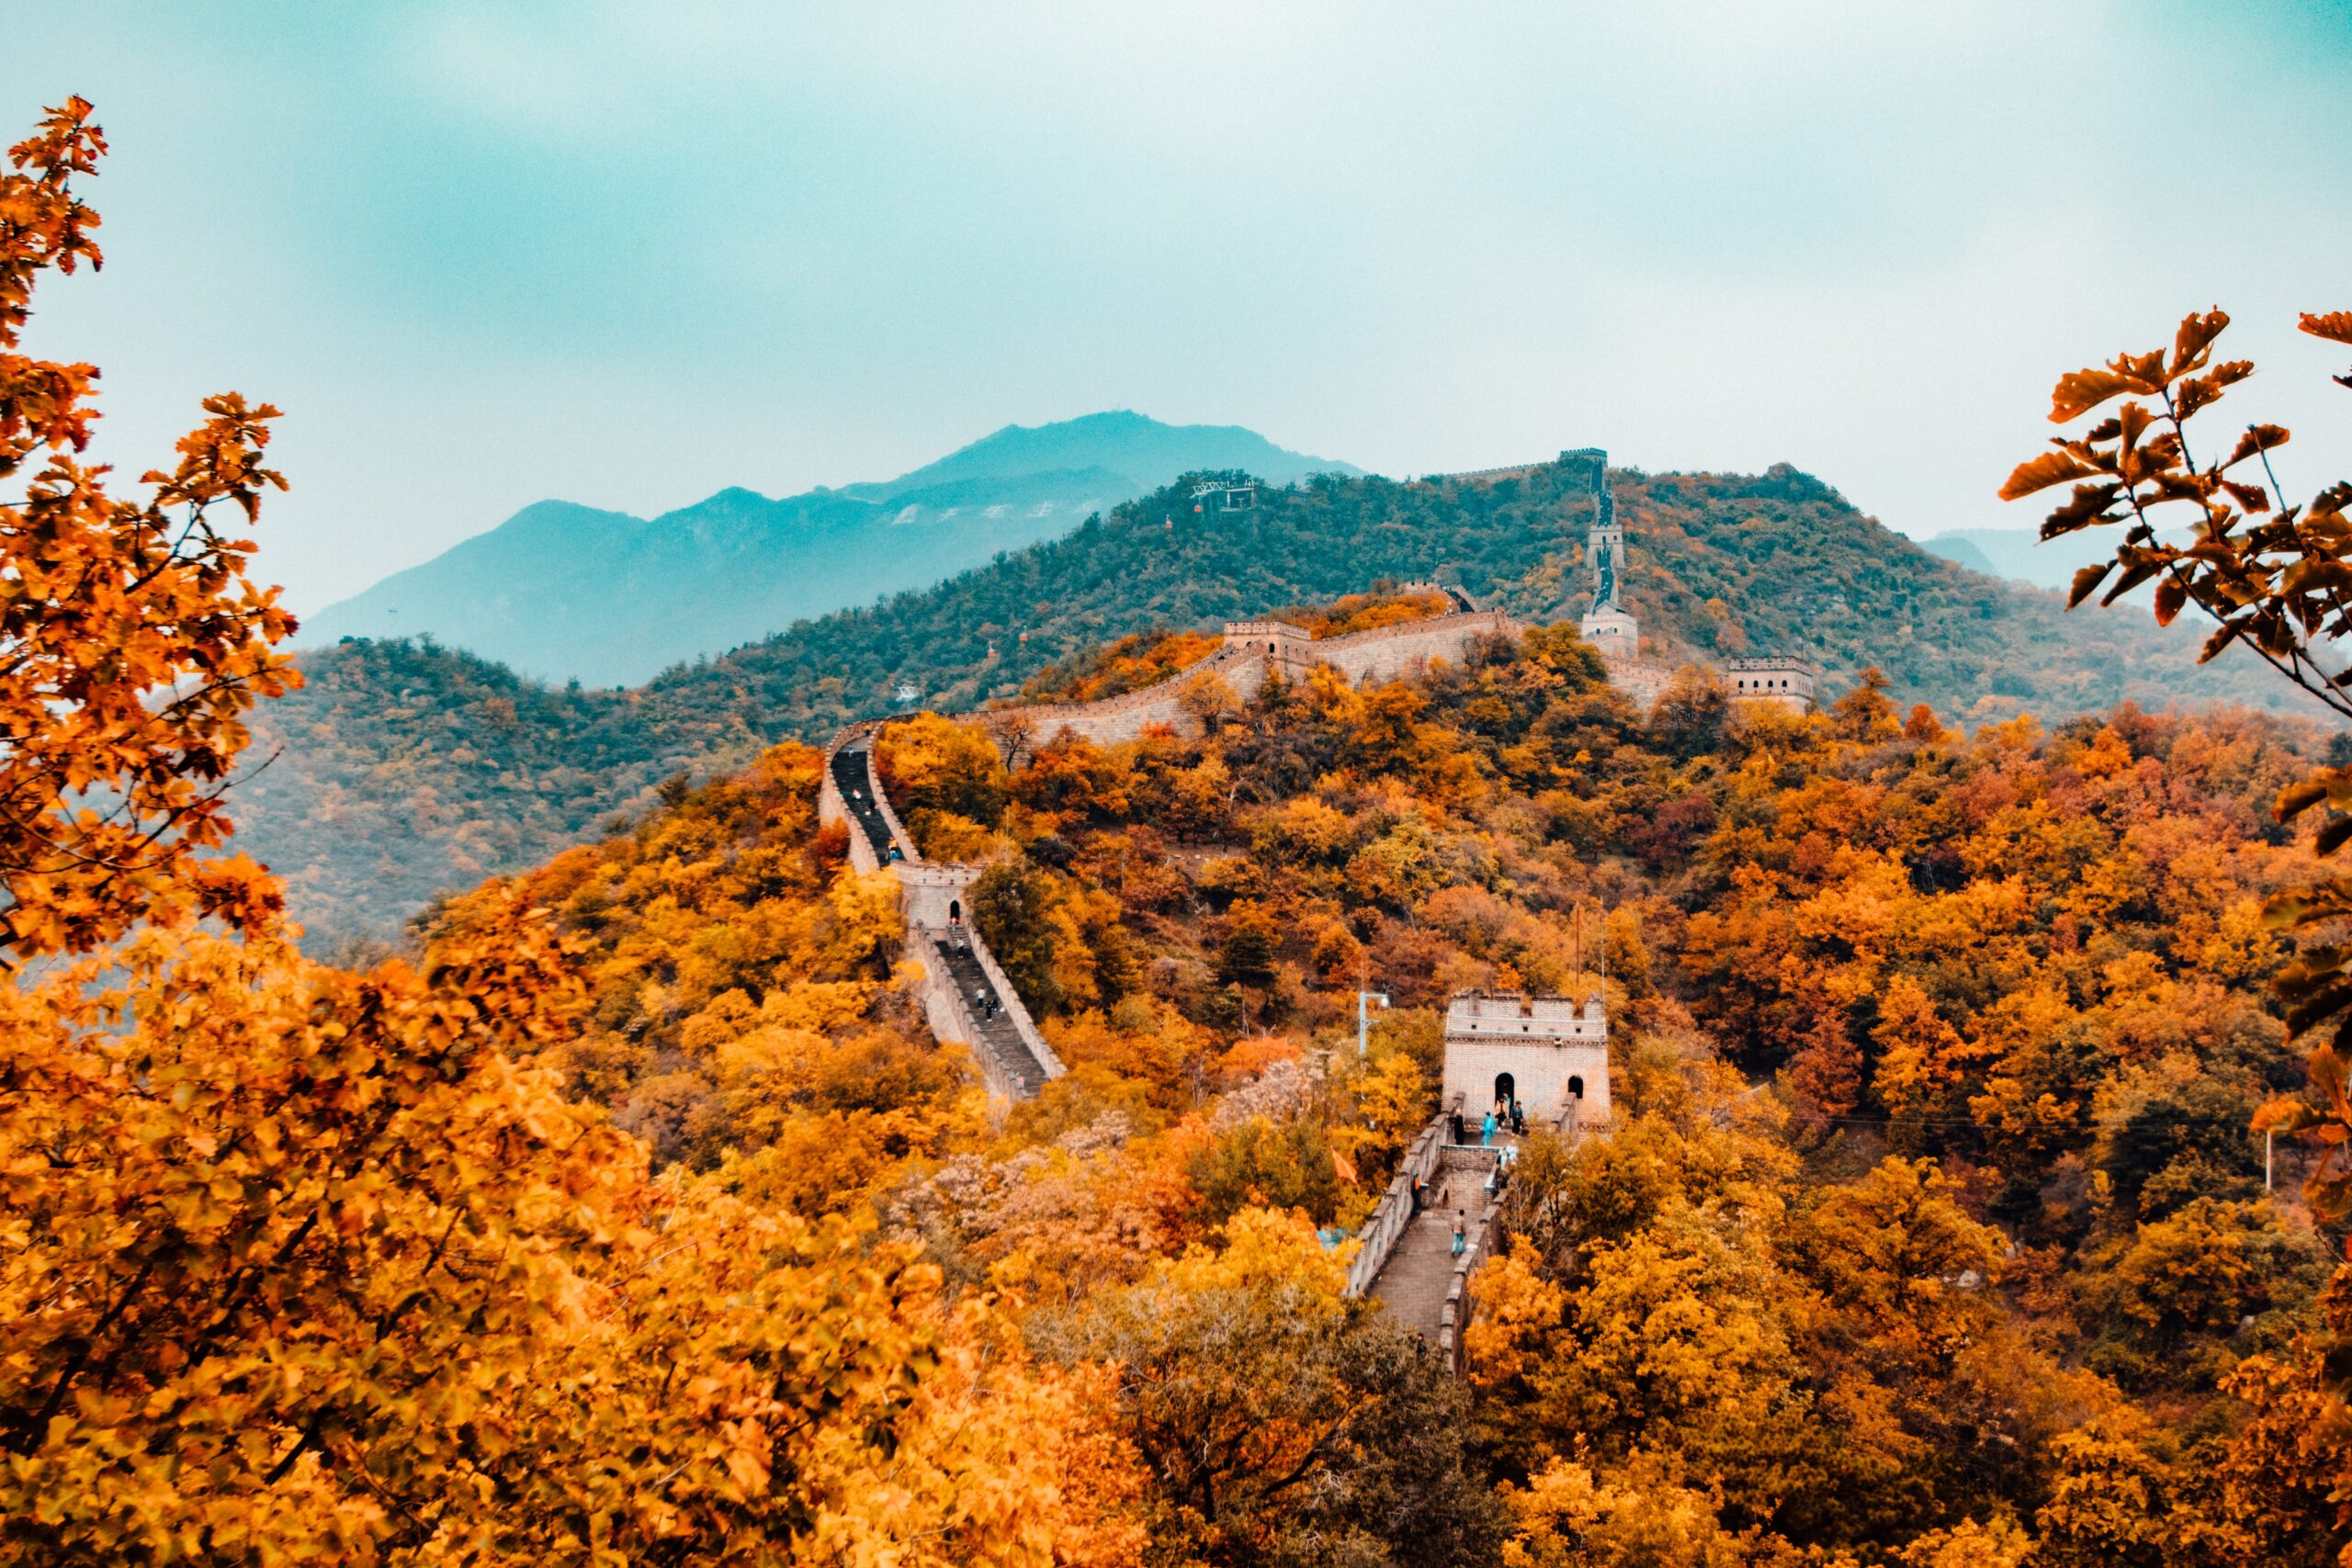 Great Wall of China, China